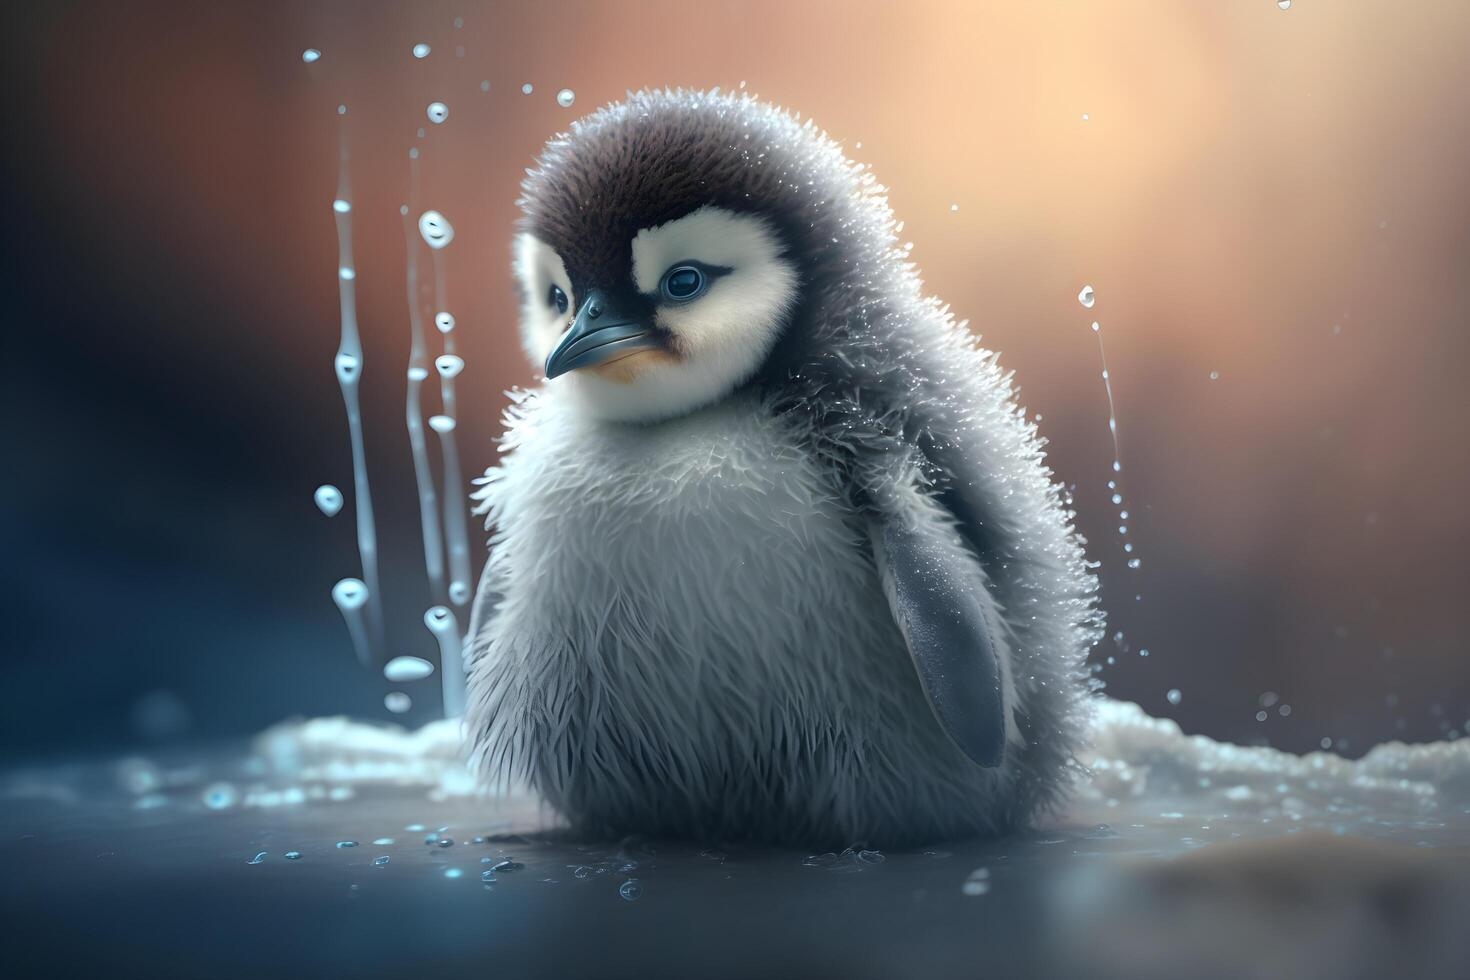 Süß Schmeichelnder Pinguin, Der Geschenke in Den Händen Hält. Ai